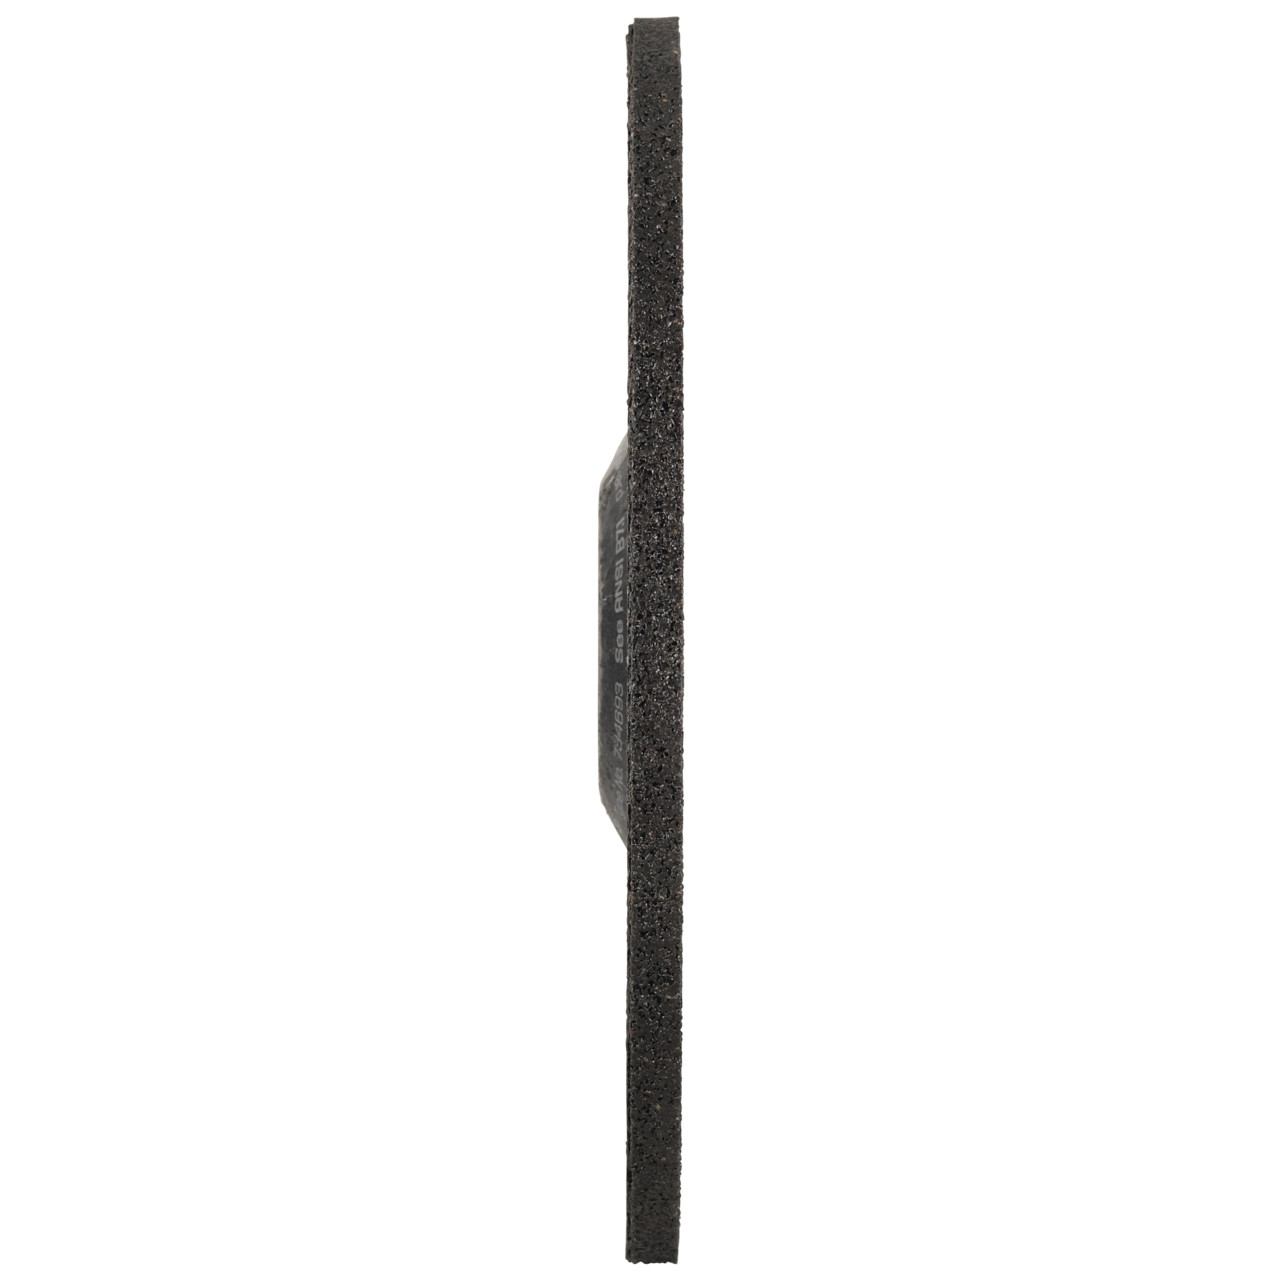 Tyrolit Grove slijpschijf DxUxH 115x6x22,23 FASTCUT Basic voor staal en roestvast staal, vorm: 27C - offset uitvoering, Art. 34468716